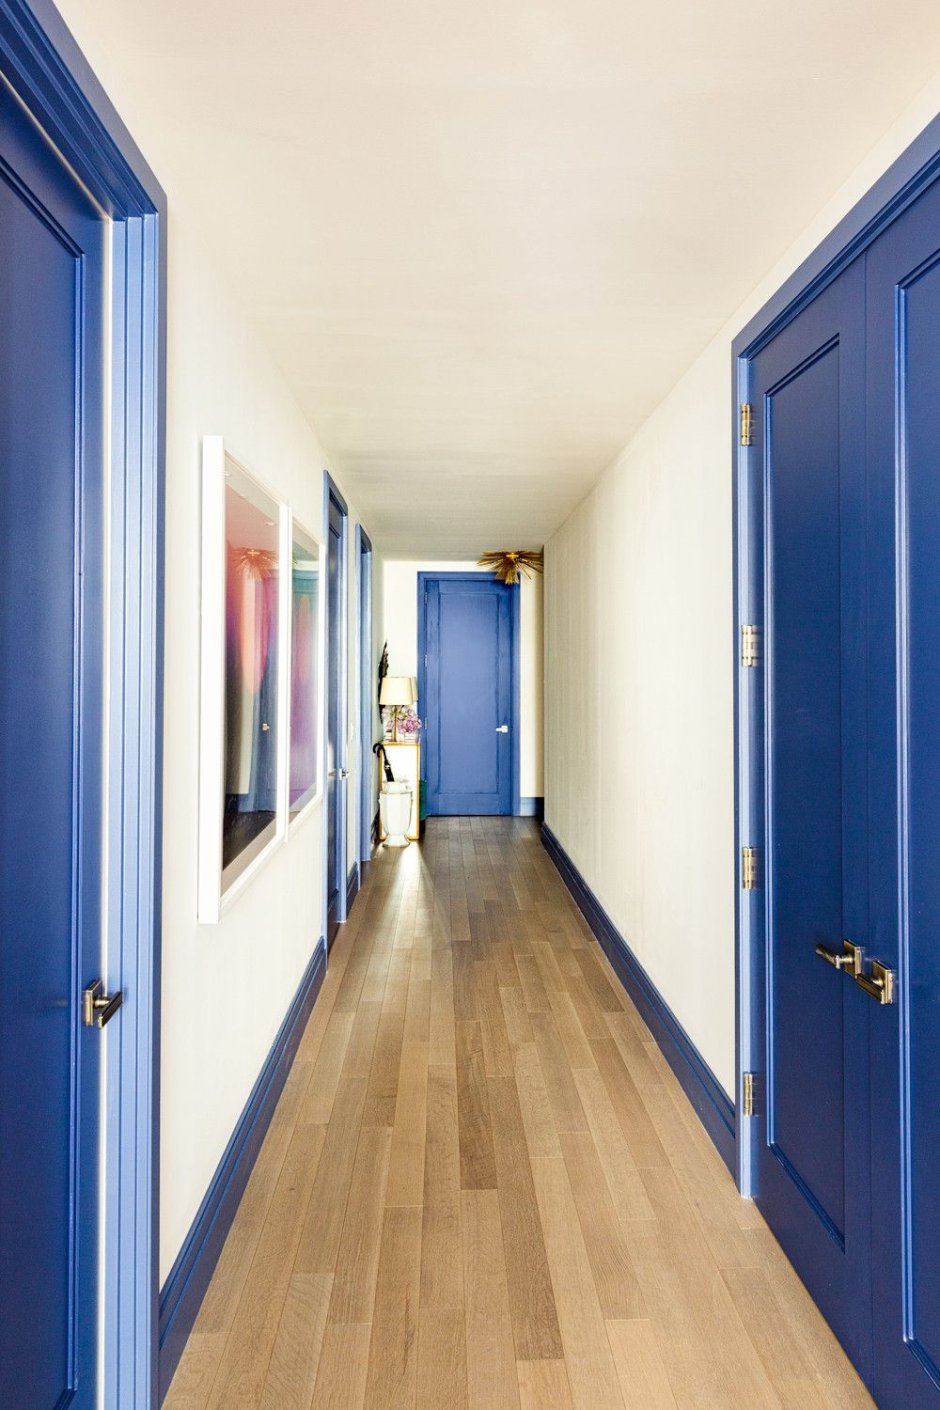 Синие двери в интерьере